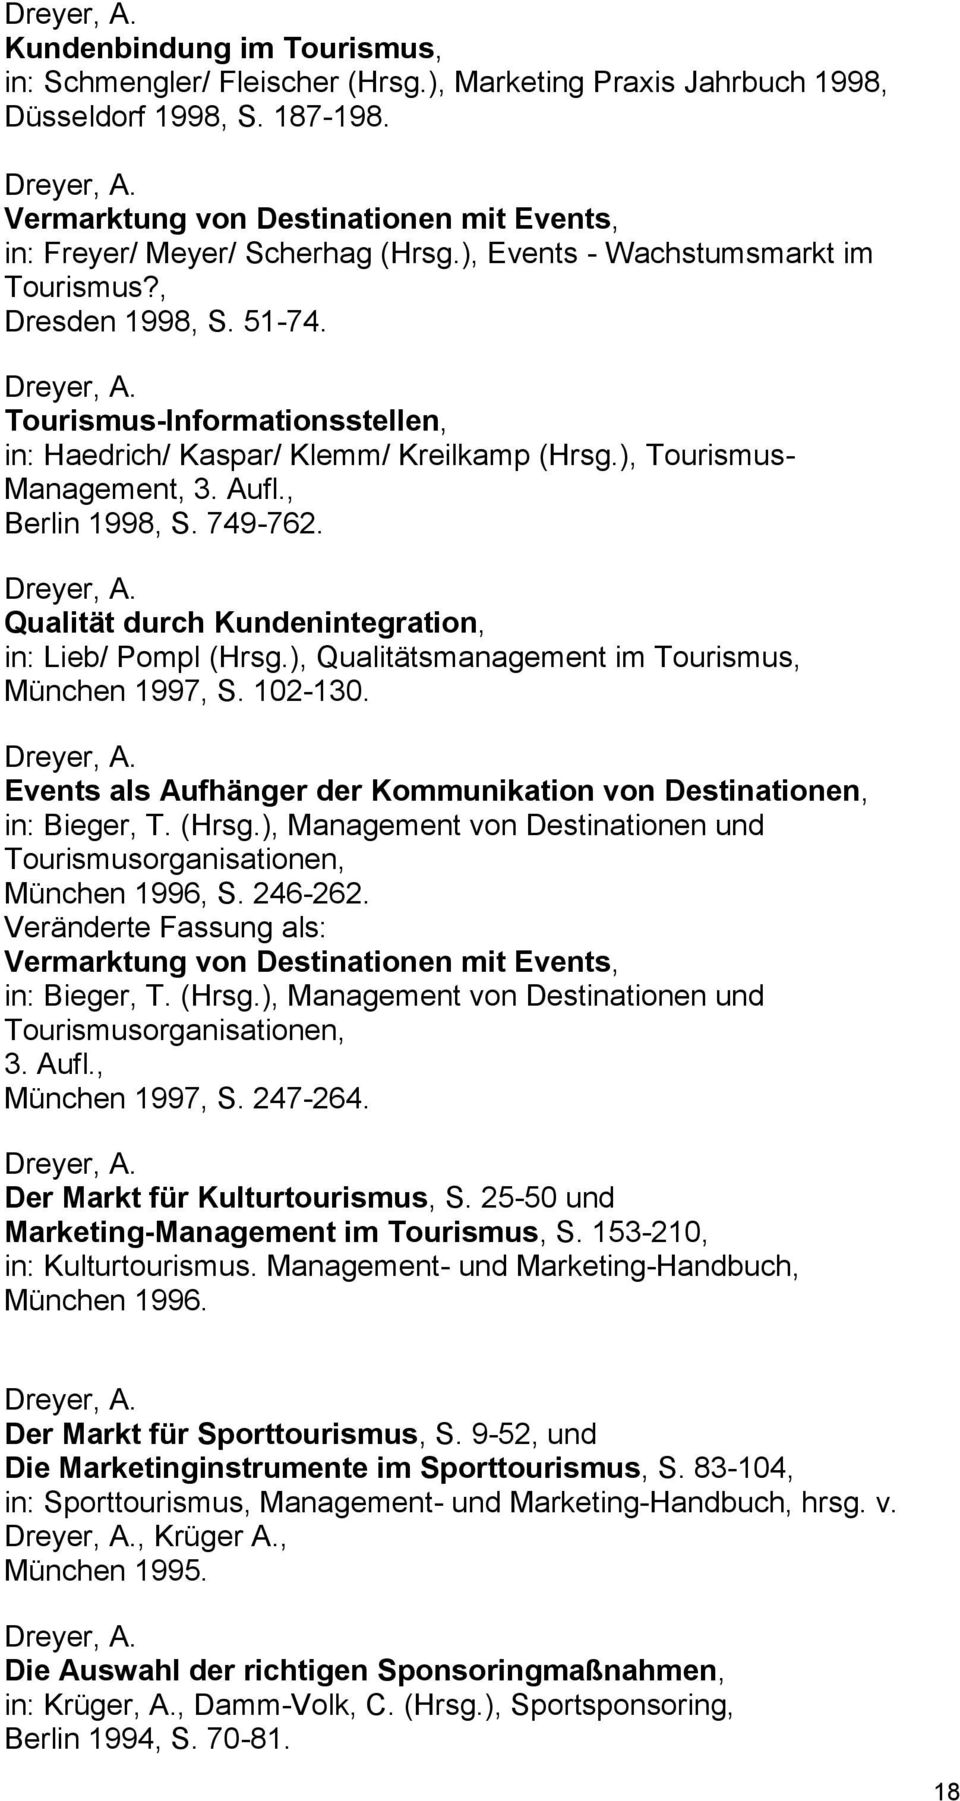 749-762. Qualität durch Kundenintegration, in: Lieb/ Pompl (Hrsg.), Qualitätsmanagement im Tourismus, München 1997, S. 102-130. Events als Aufhänger der Kommunikation von Destinationen, in: Bieger, T.